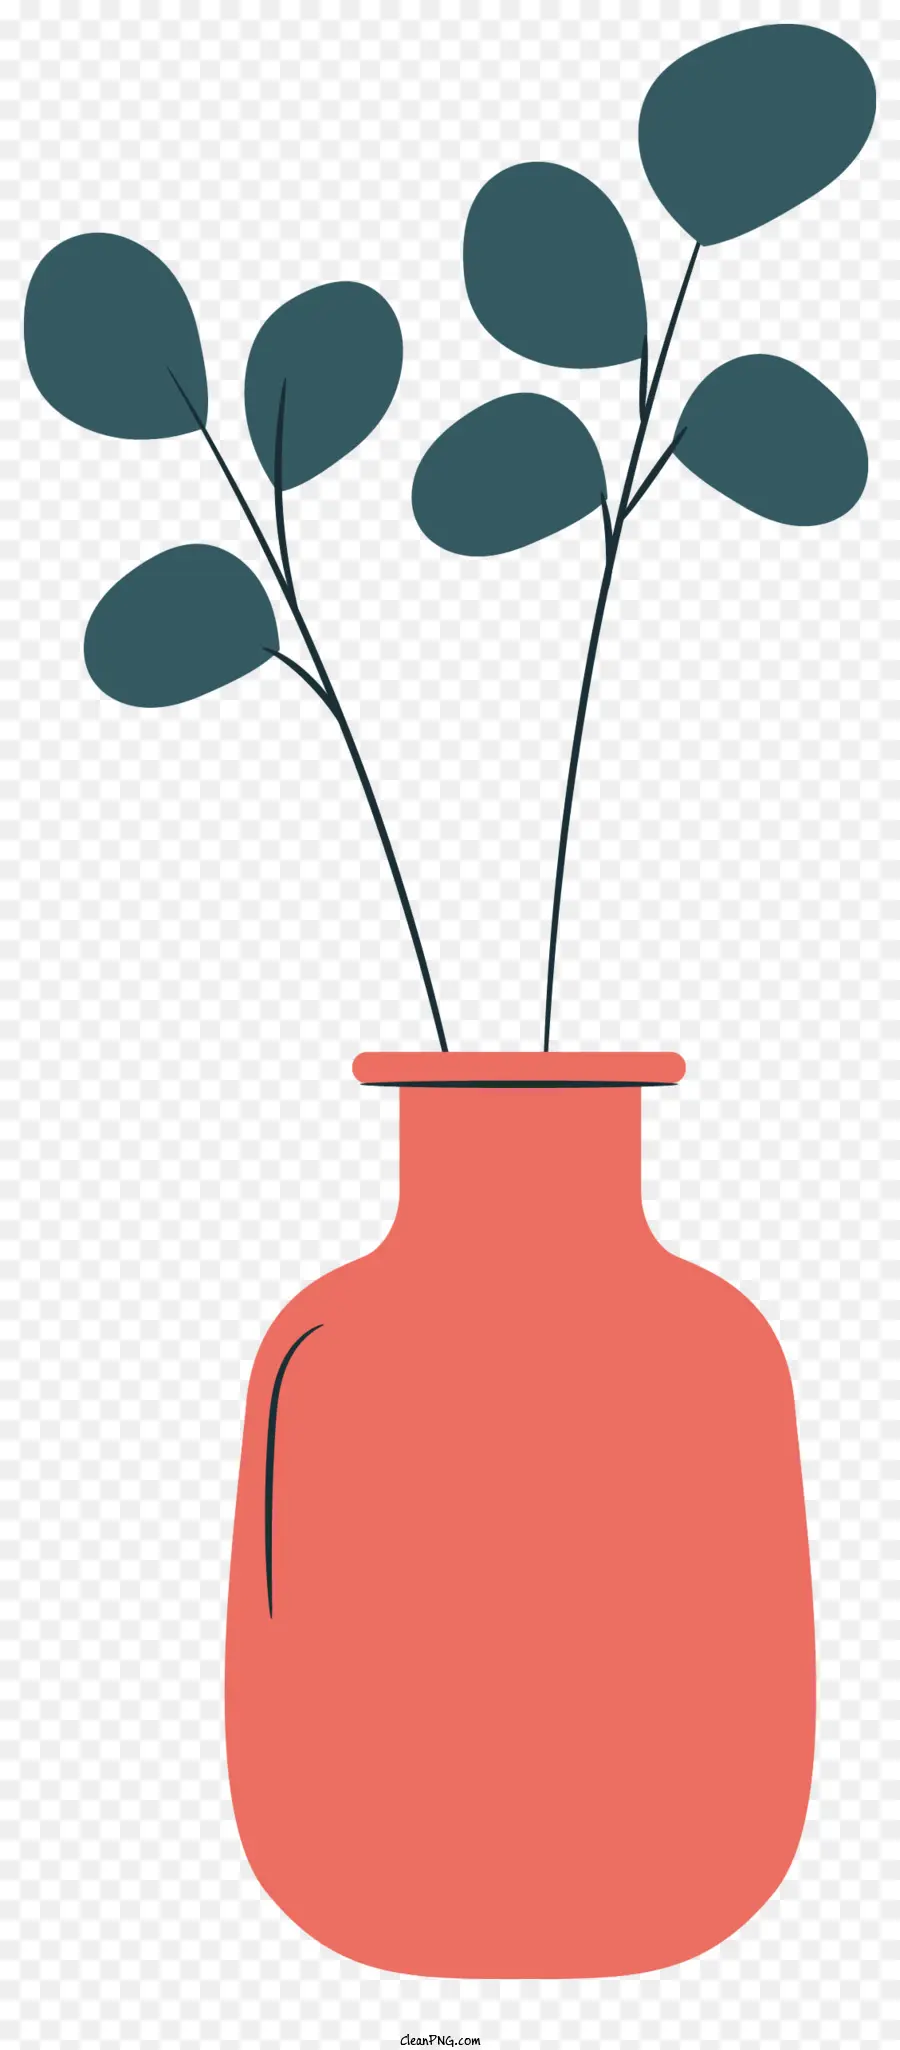 Topfpflanze rote Vase runde Form breiter Basisschmal - Rote Vase hält Pflanze mit langen Blättern